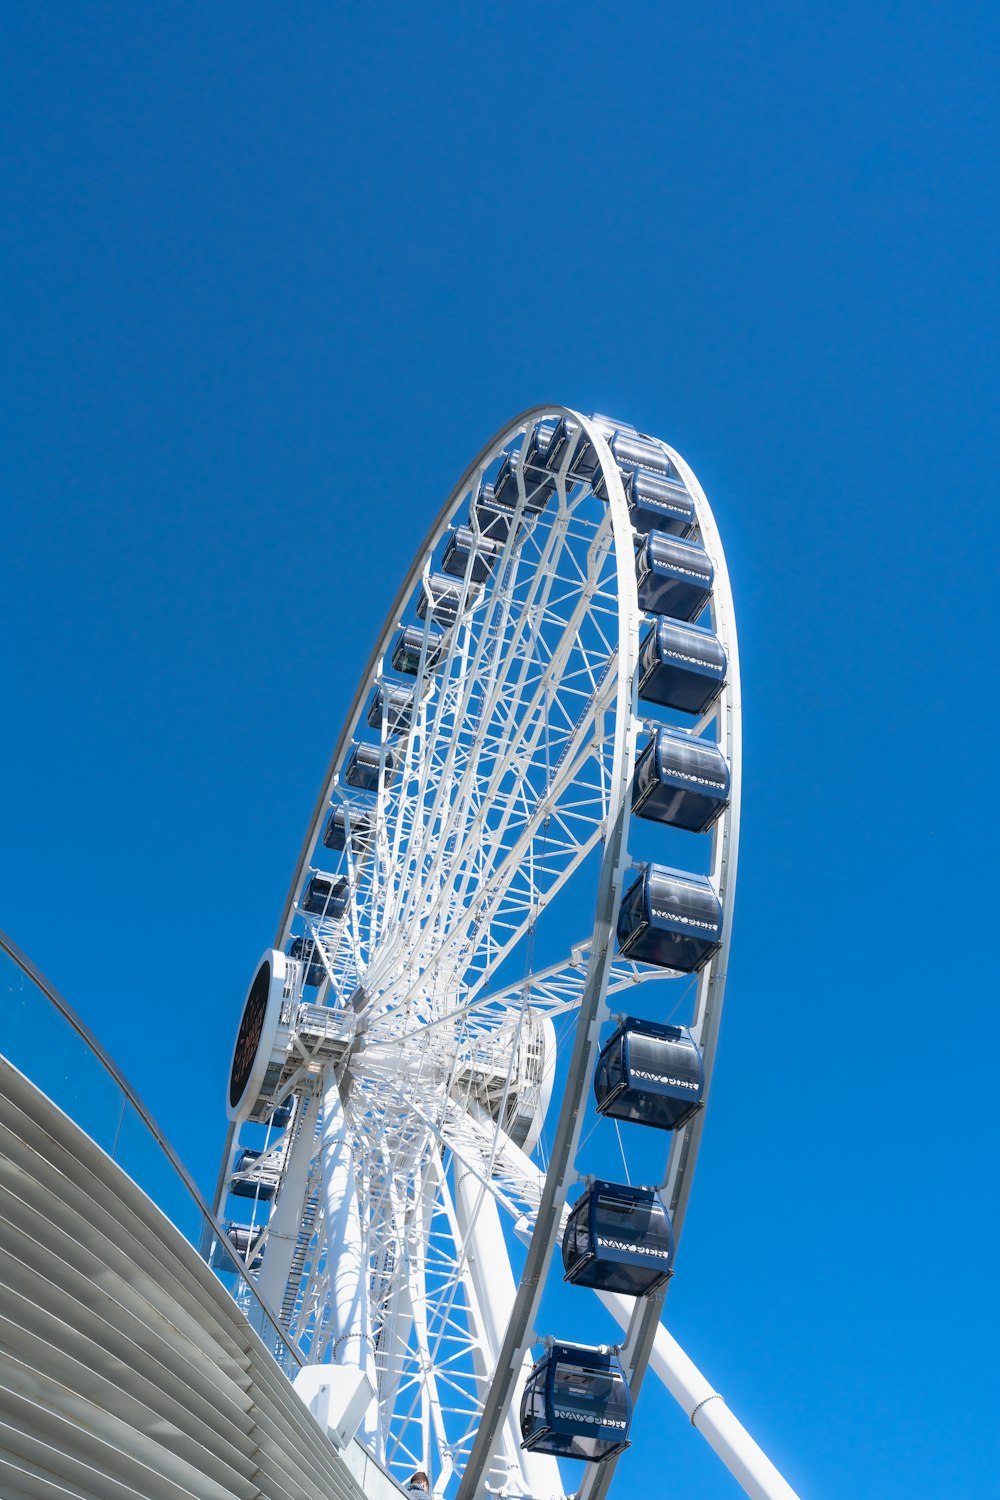 a ferris wheel against a clear blue sky